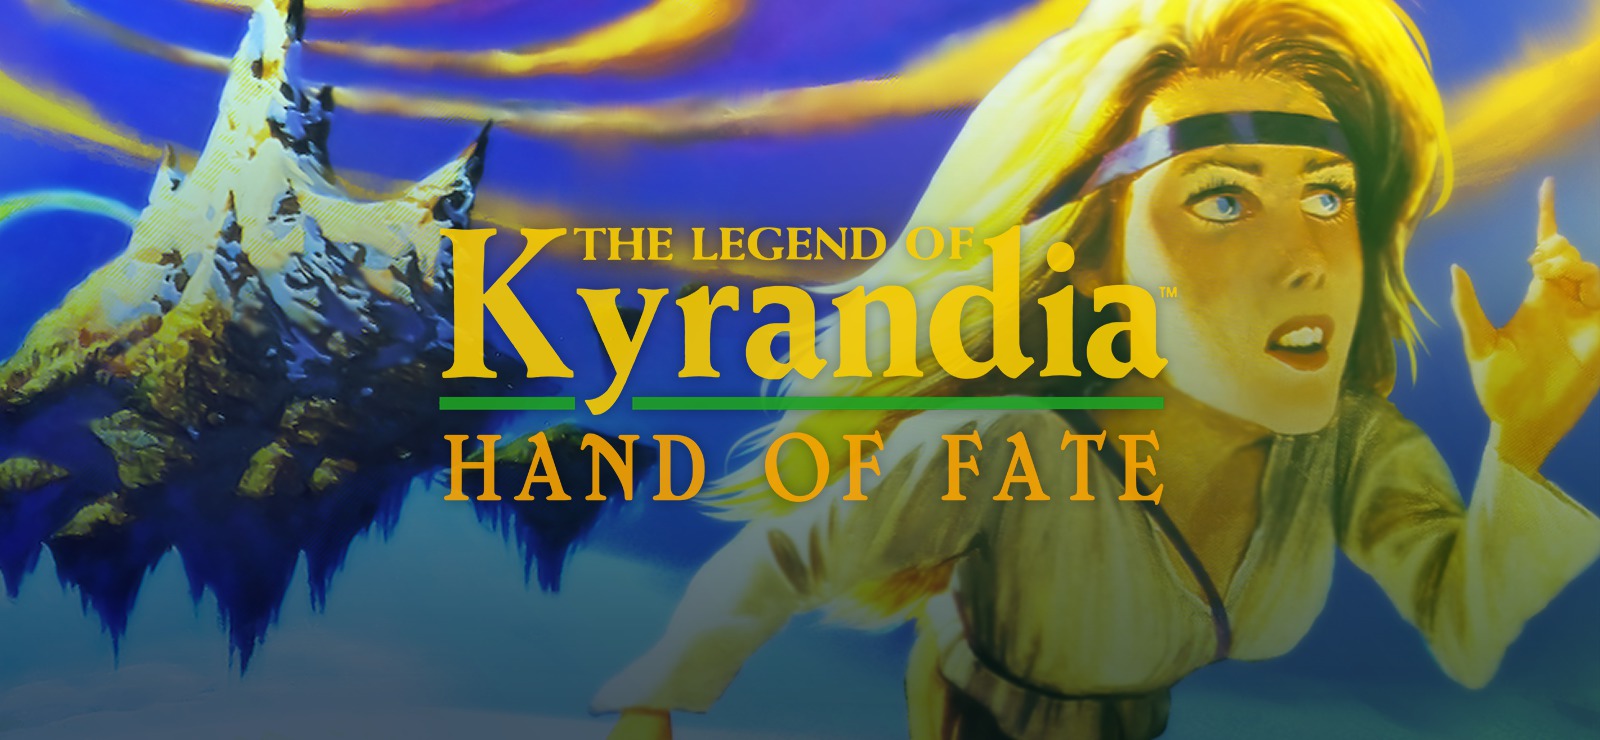 The Legend of Kyrandia 2